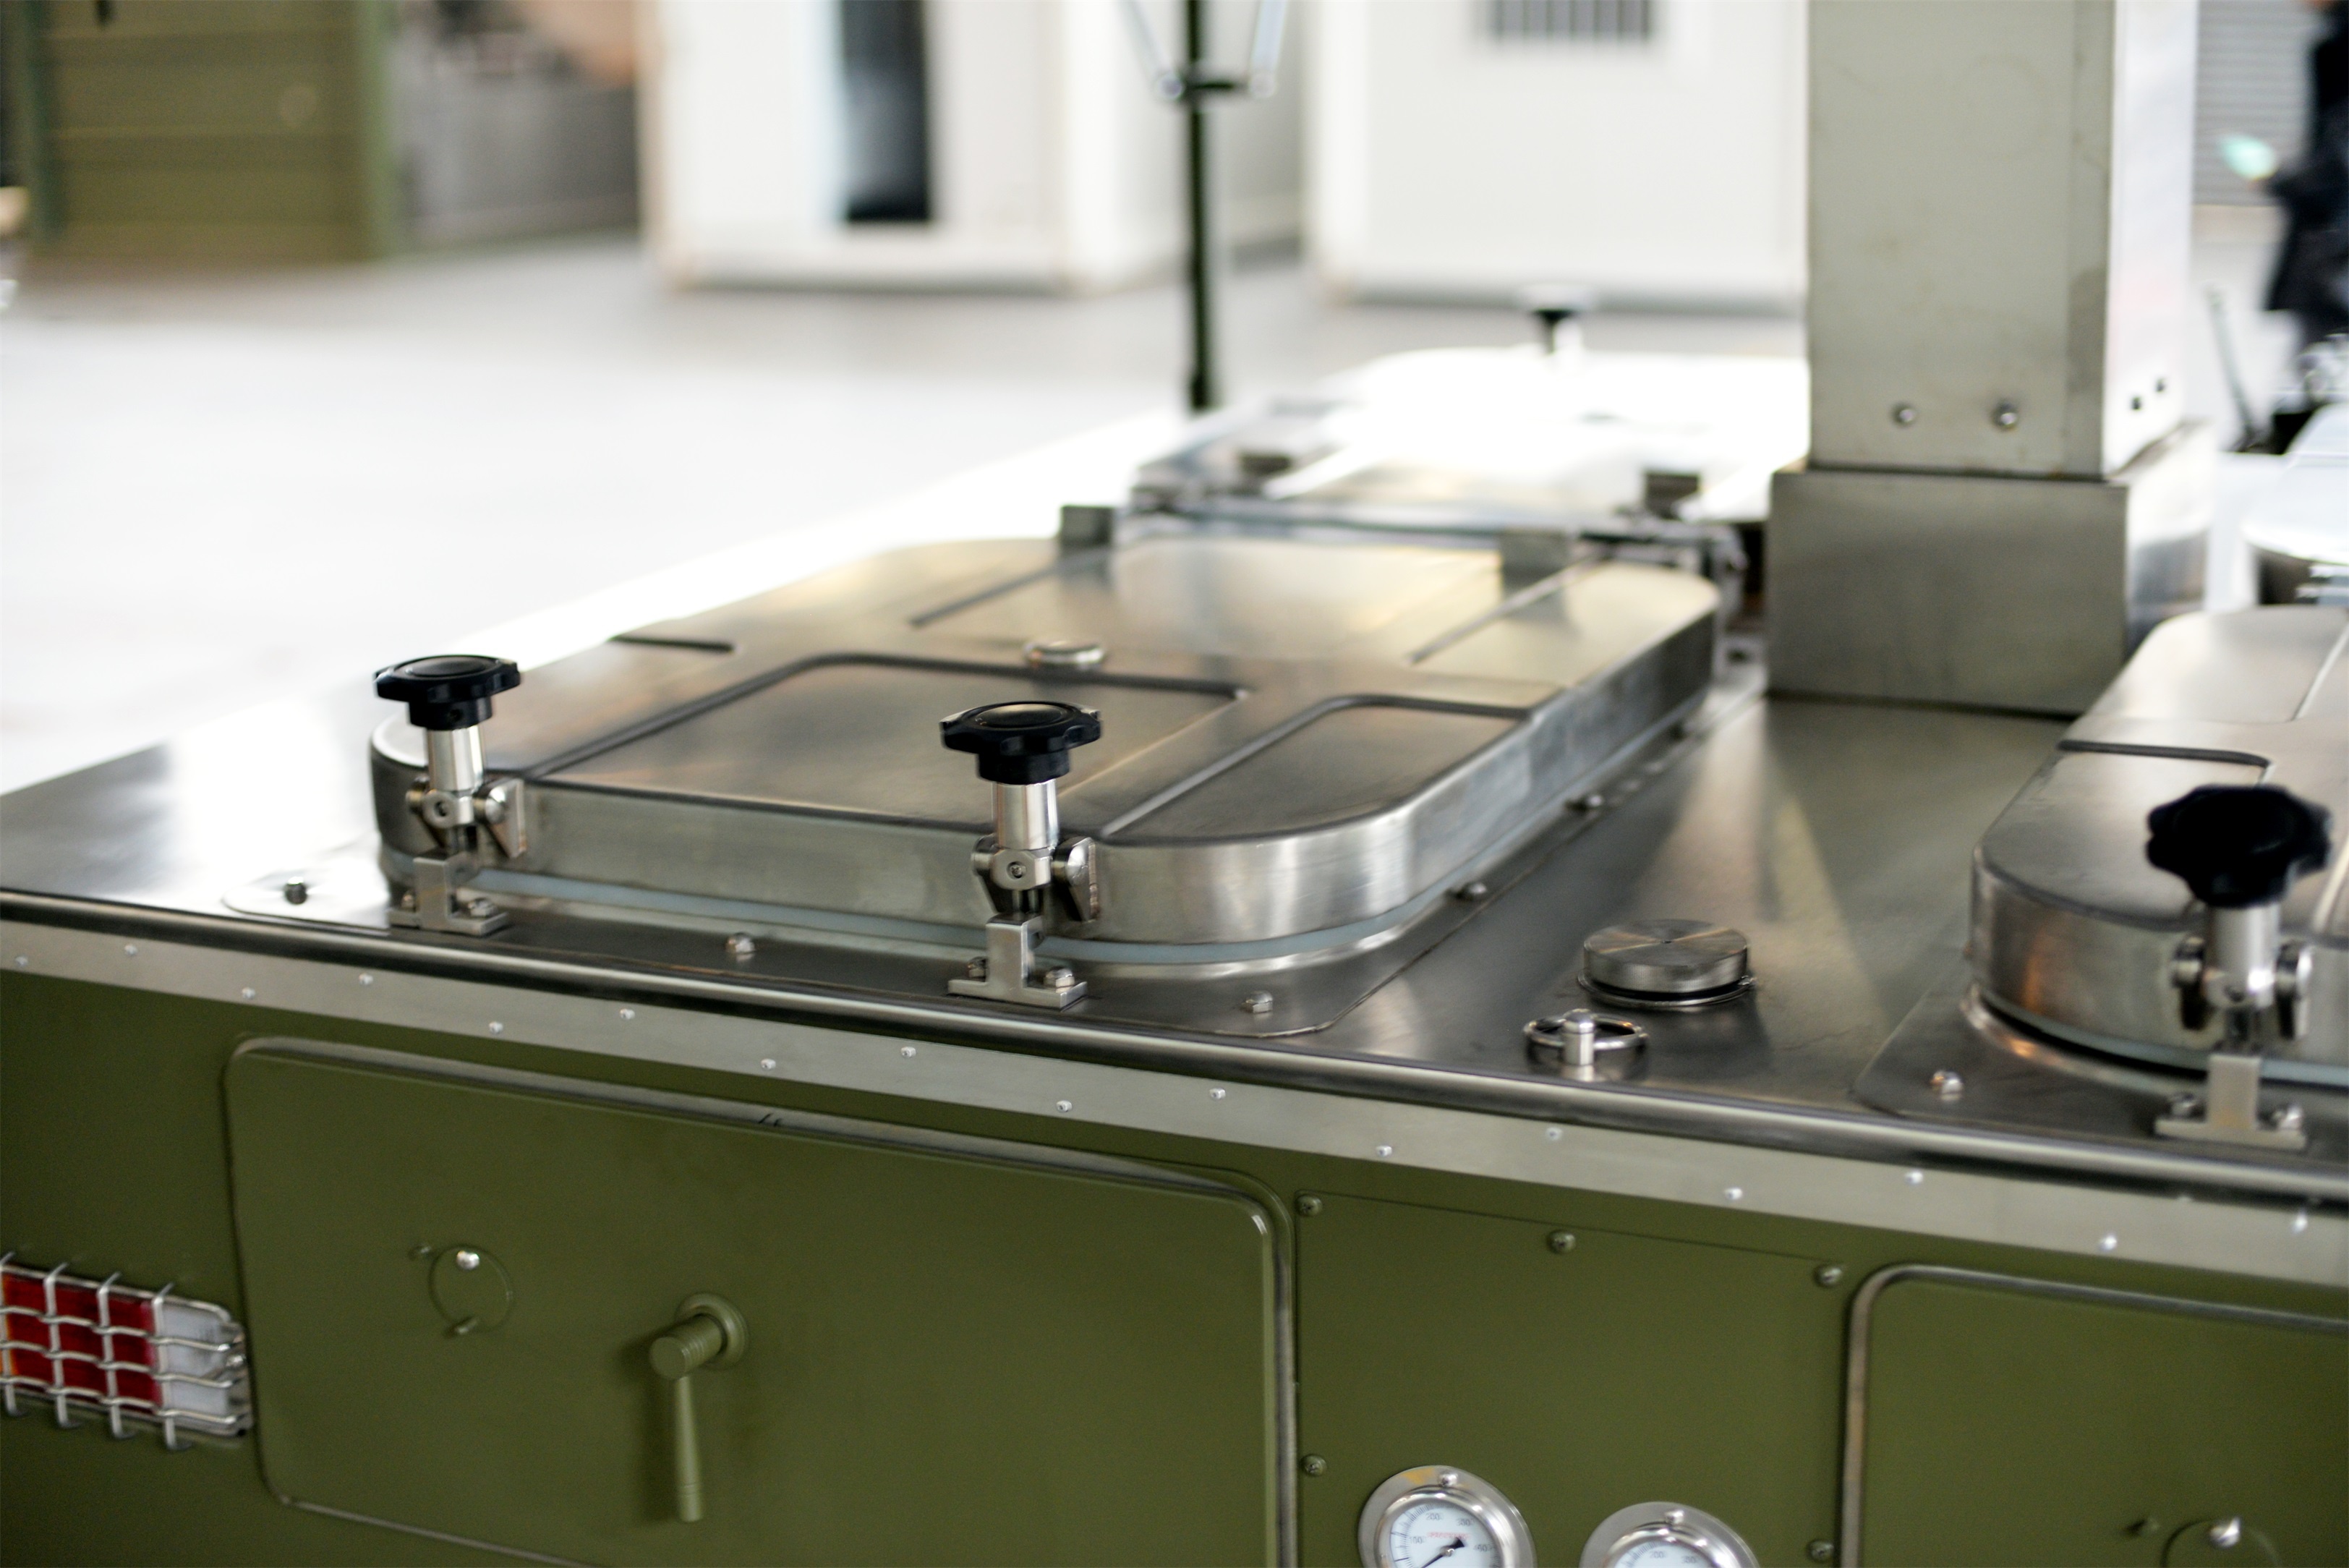 Cuisine de campagne mobile de l'armée sur mesure cuisine mobile militaire modèle XC-250